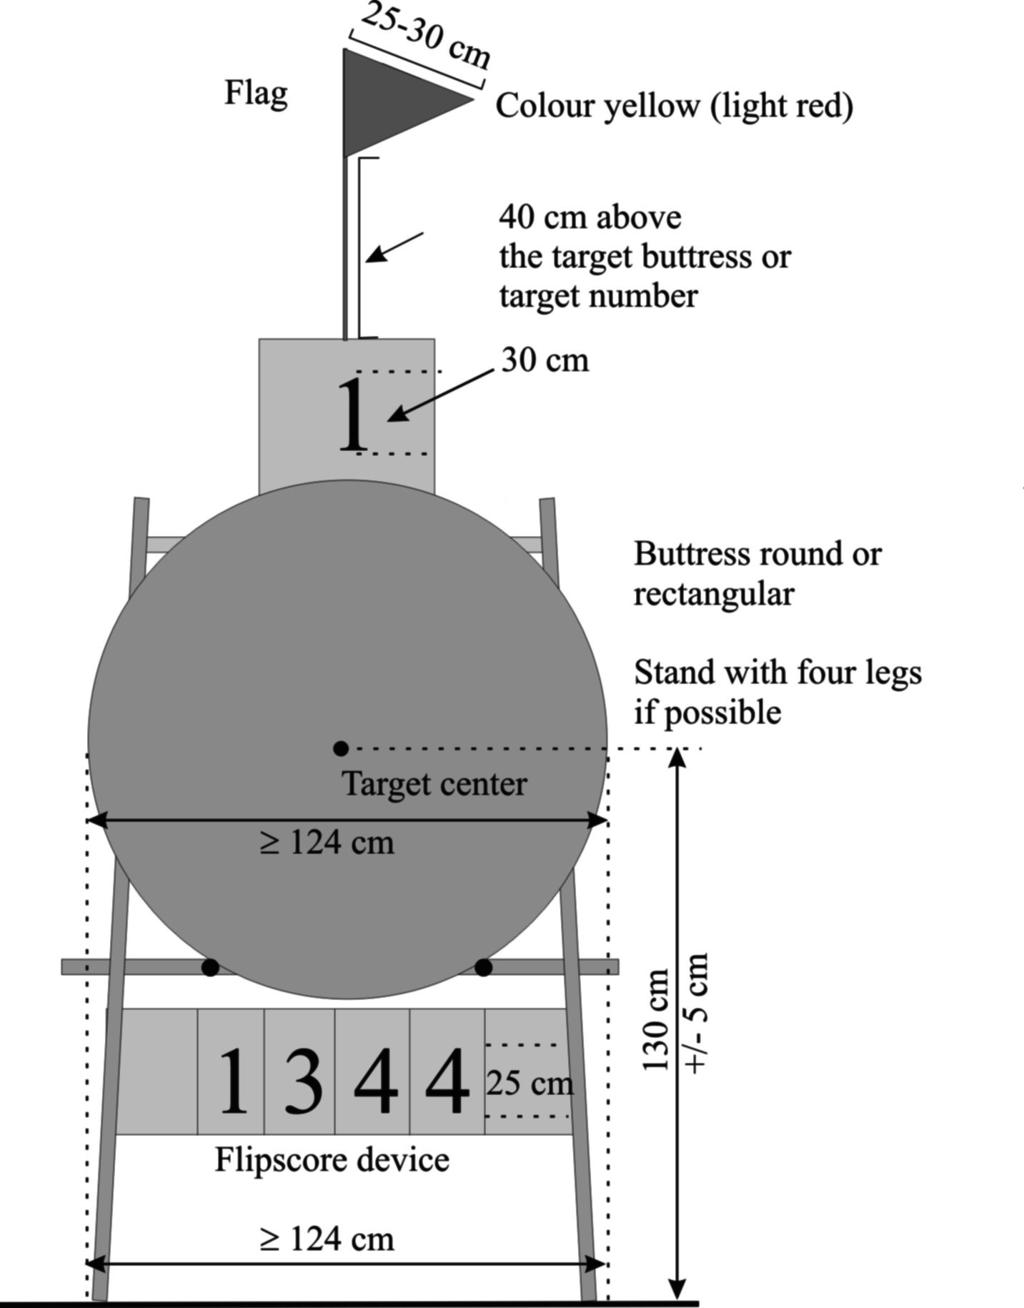 Image 4: Outdoor target butt set-up 4 x 5-10 Scoring Zones Target